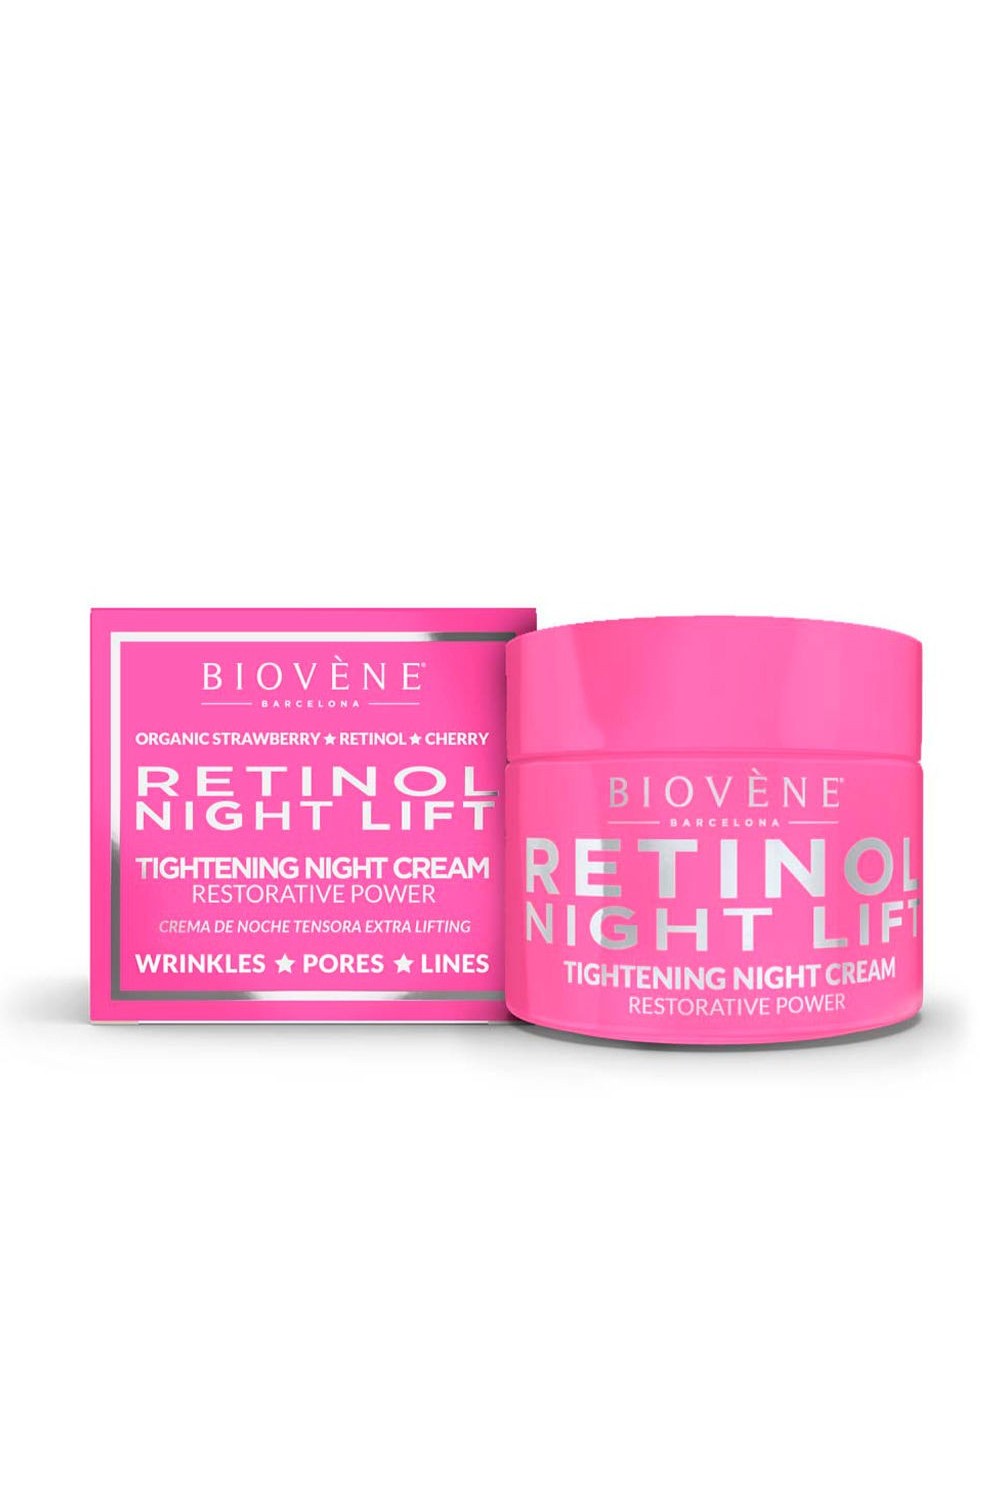 Biovene Retinol Night Lift Tightening Night Cream Restorative Power 50ml